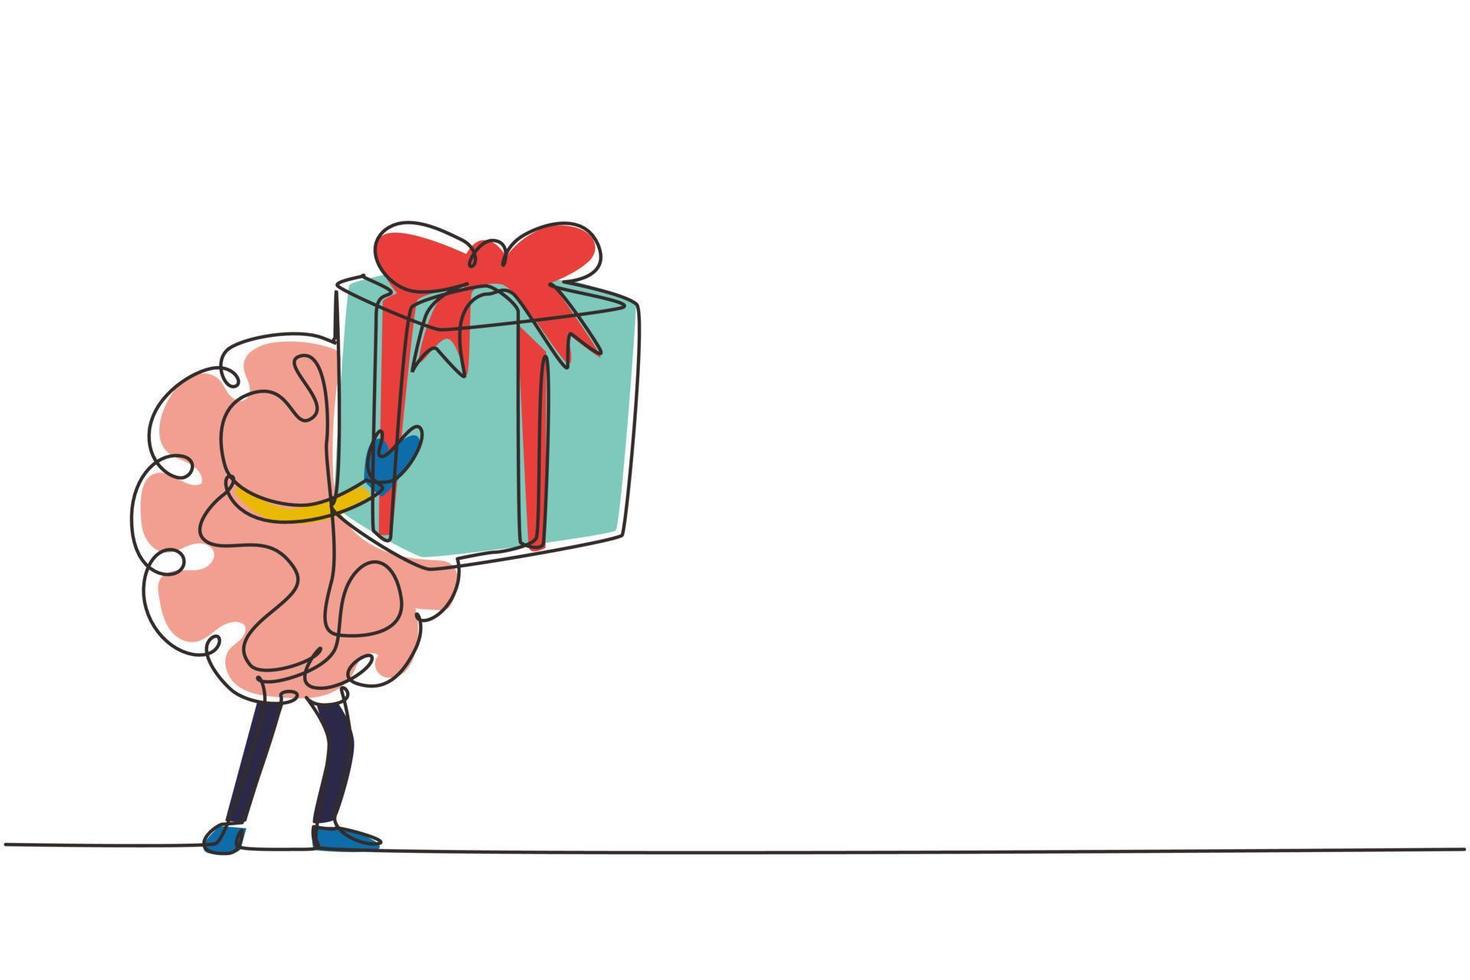 enkele één lijntekening menselijk brein cartoon ontwerpconcept met grote geschenkdoos met lint. vrolijke hersenen cartoon concept met een doos. moderne doorlopende lijn tekenen ontwerp grafische vectorillustratie vector